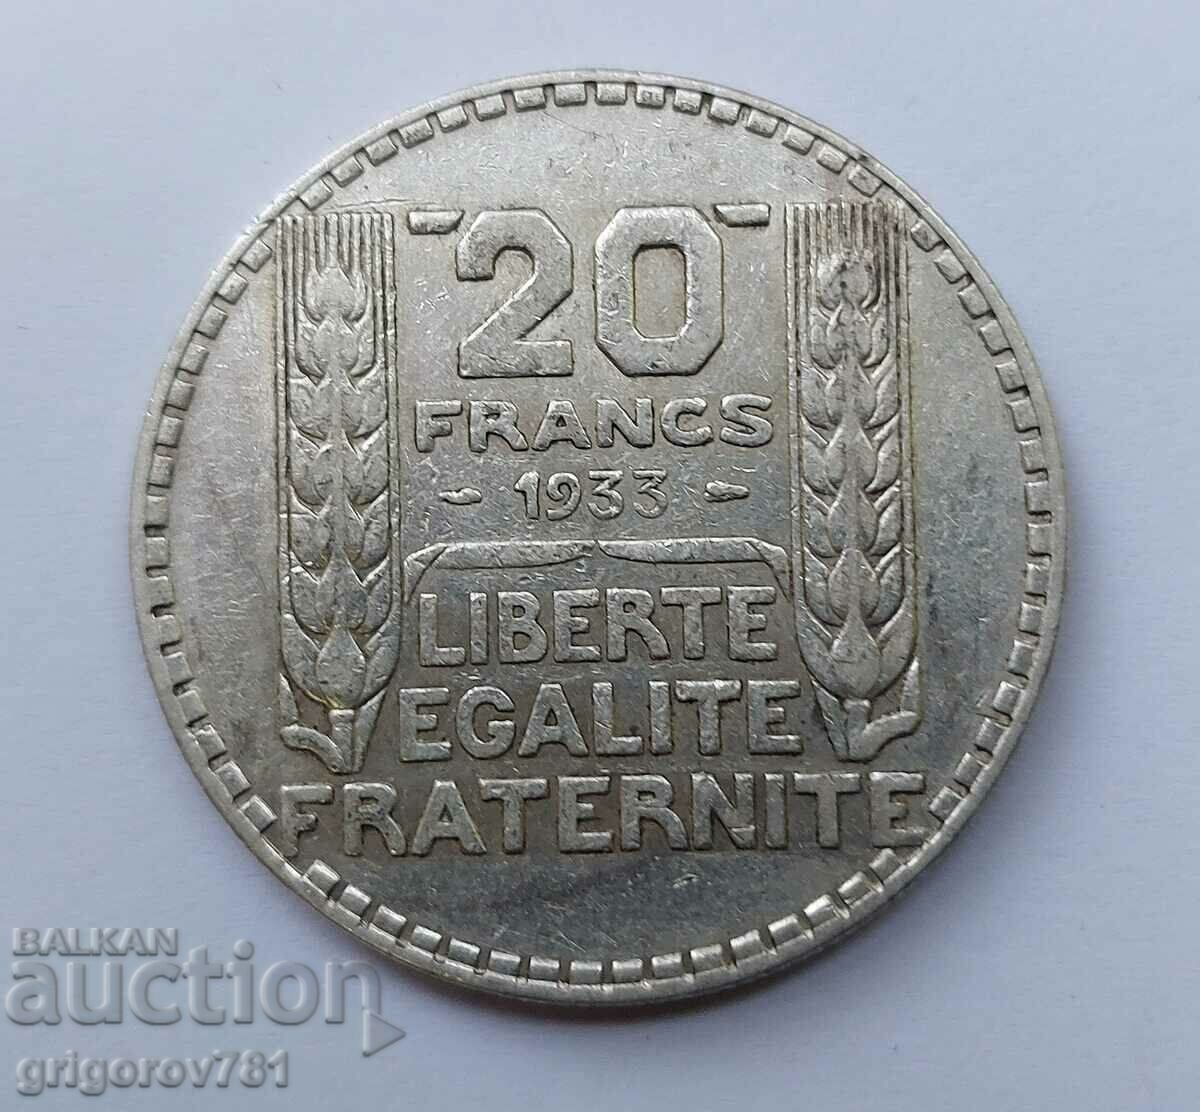 20 Franci Argint Franta 1933 - Moneda de argint #18